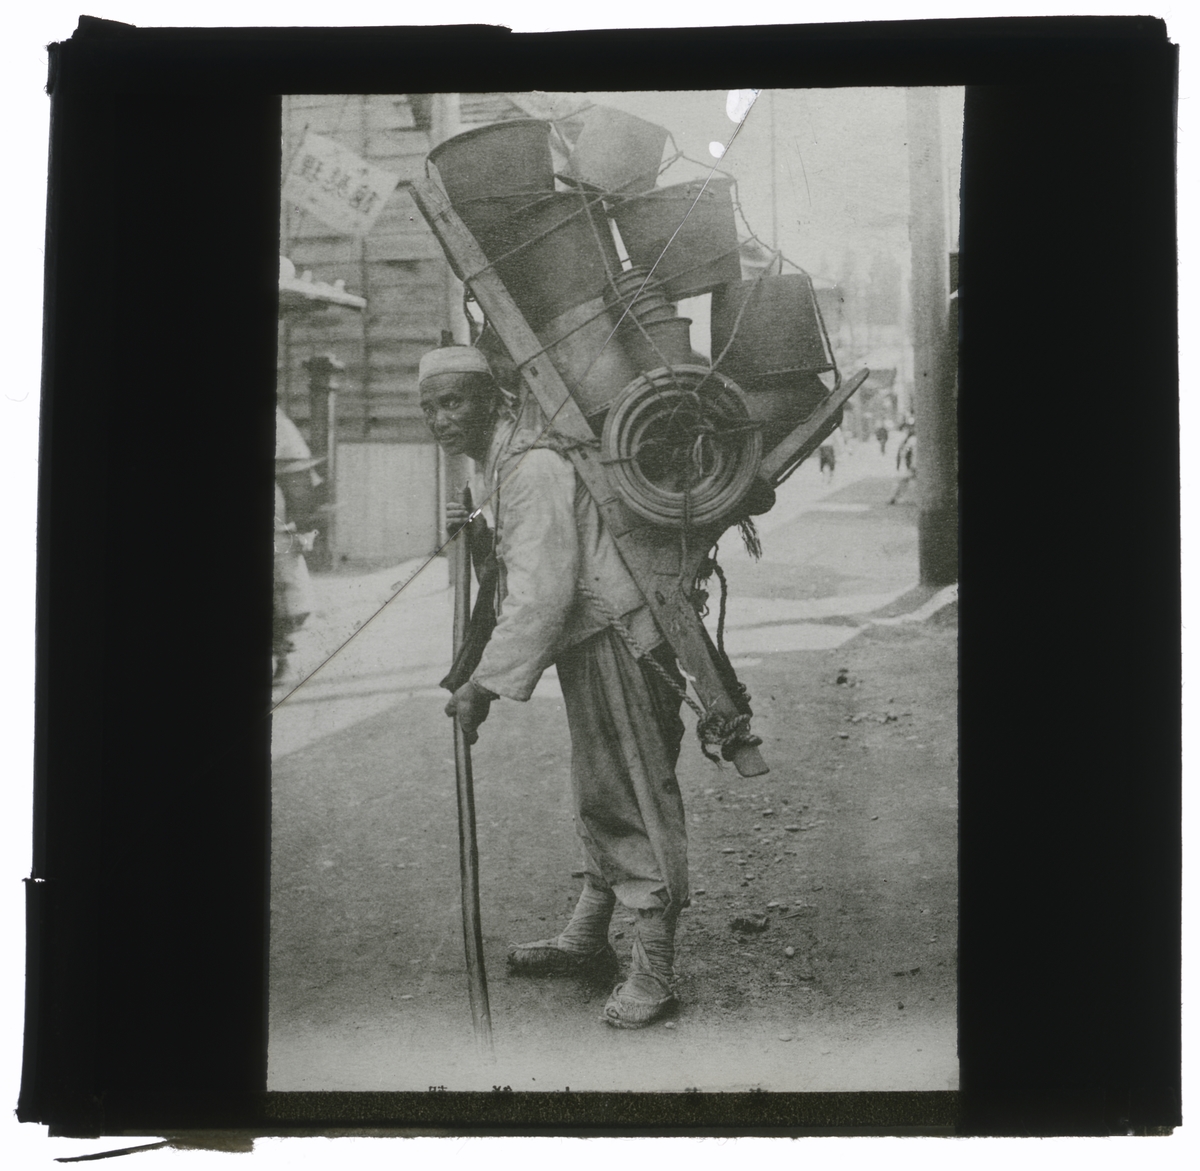 Hinkförsäljare i Korea. Bilden är inköpt av C. Fredrik W. (missionär i Korea 1915-22) för föredrag åren 1922-1950-talets början i Sverige.